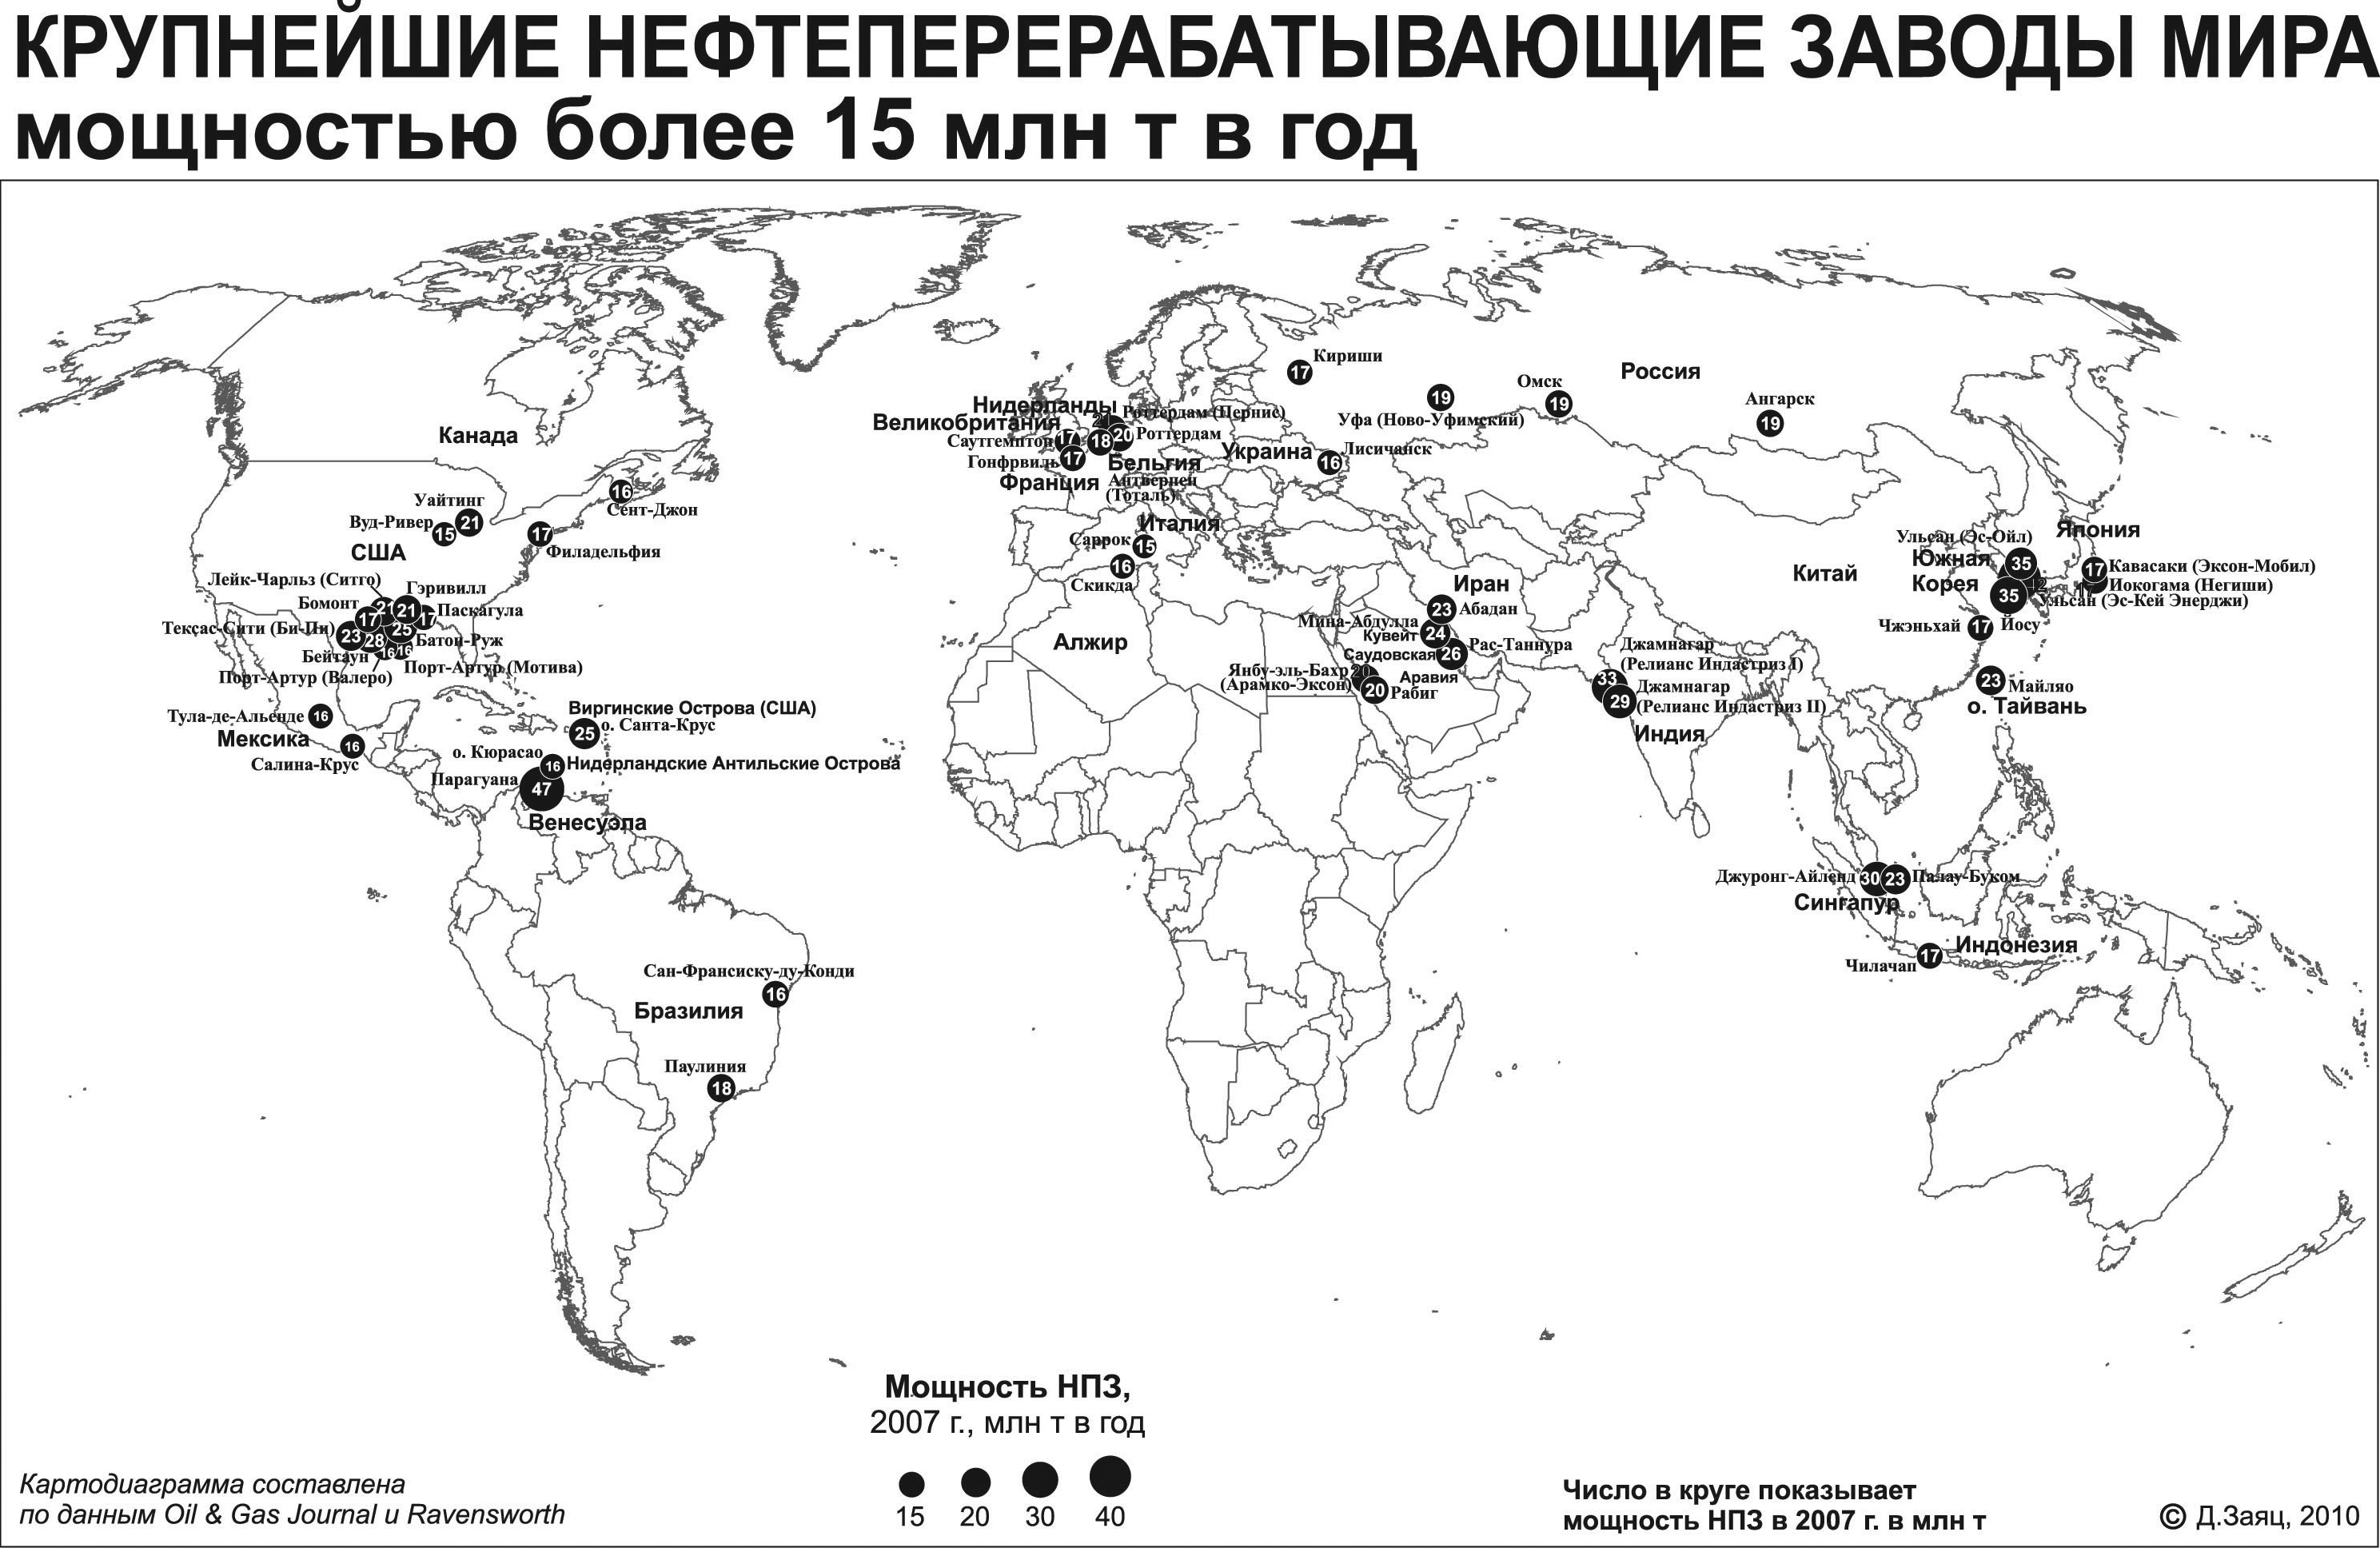 Центрами нефтепереработки азиатской части россии являются. Нефтеперерабатывающие заводы России на карте. Крупные центры нефтепереработки в России. Крупнейшие нефтеперерабатывающие заводы России на карте.